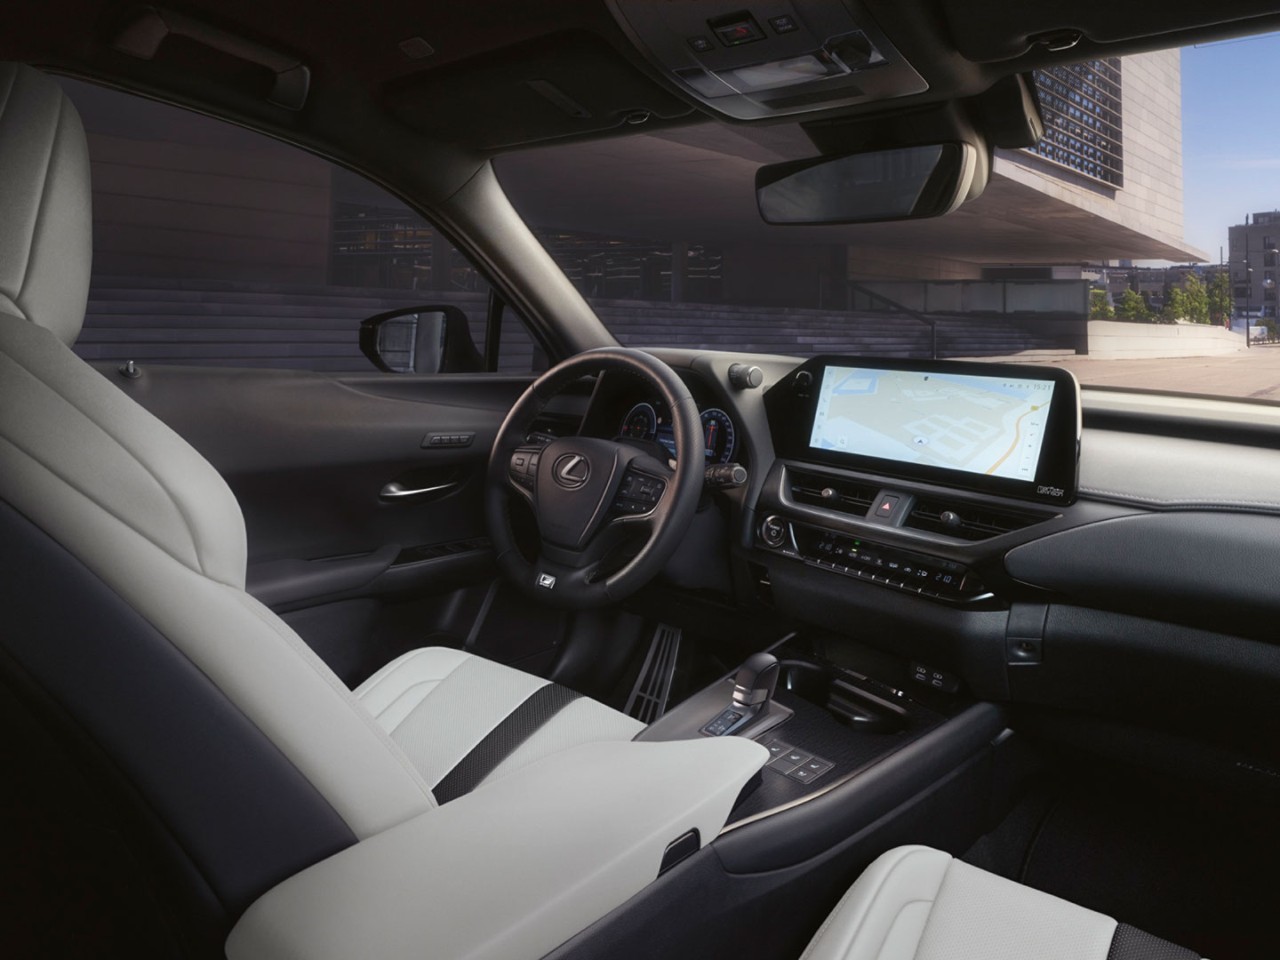 The Lexus UX cockpit